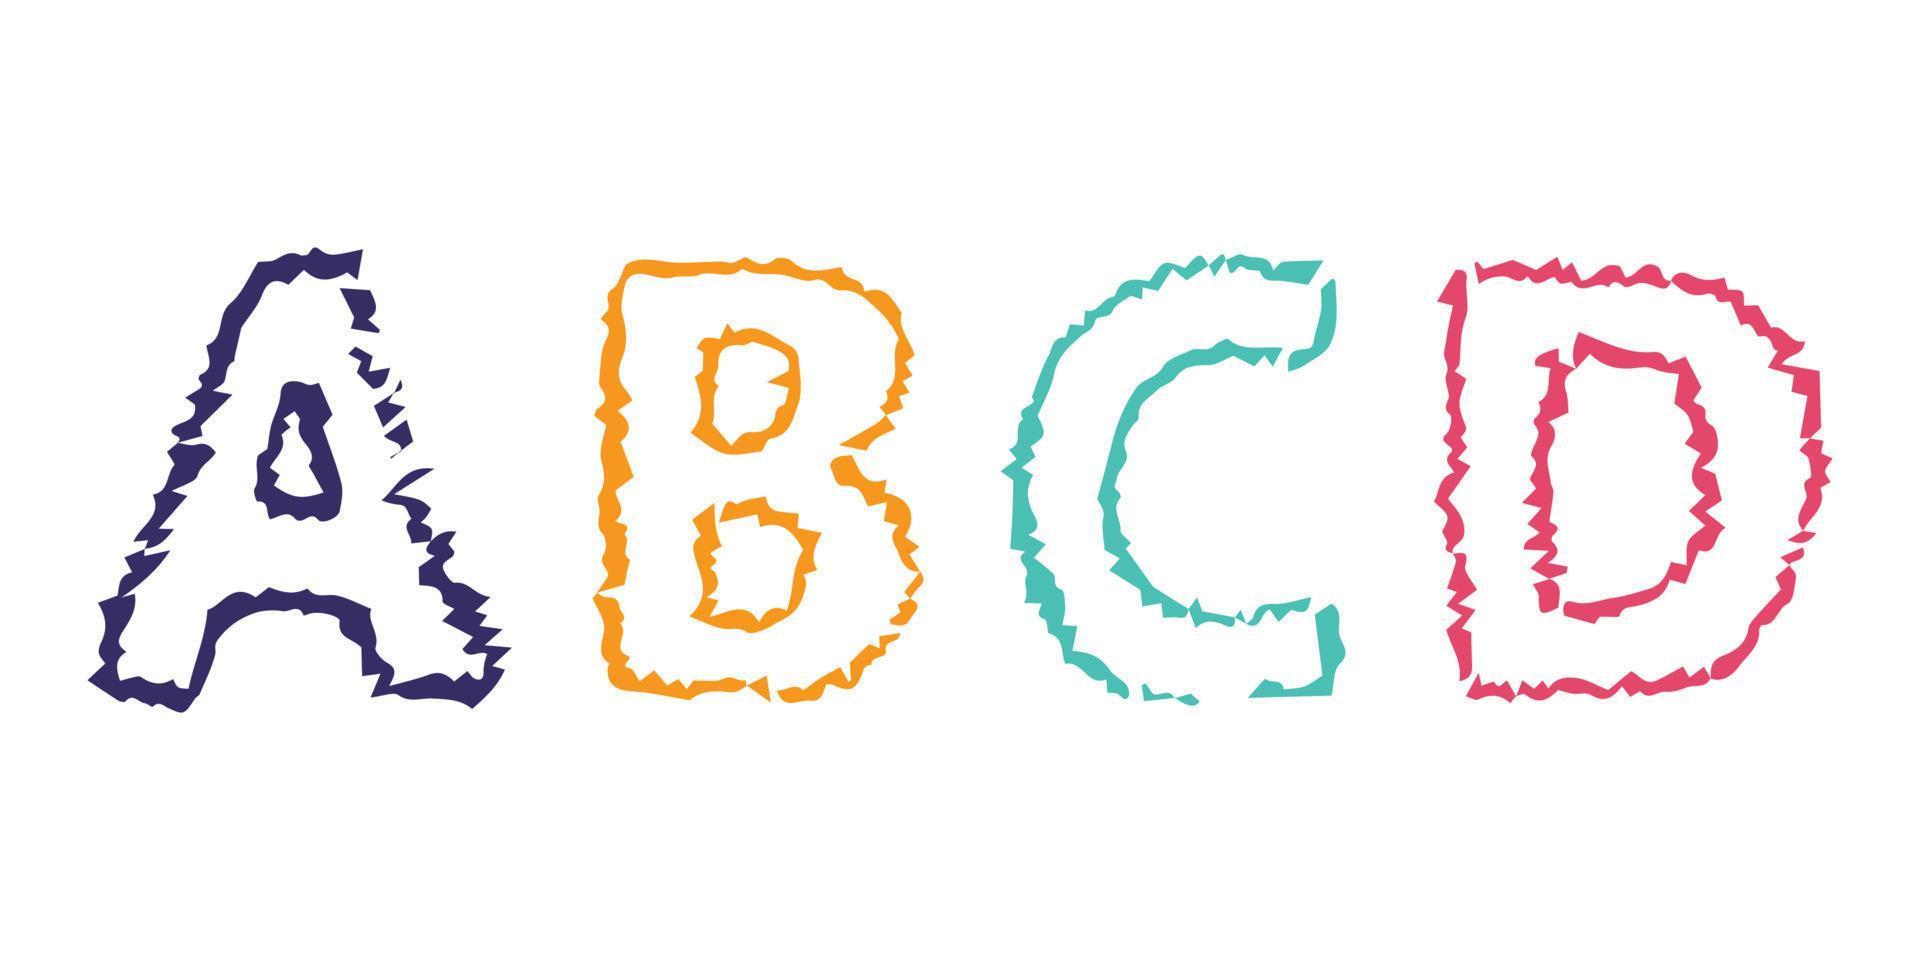 letras do alfabeto latino desenhadas à mão abcd. fonte moderna maiúscula e tipo de letra. símbolos multicoloridos em fundo branco. ilustração vetorial. vetor